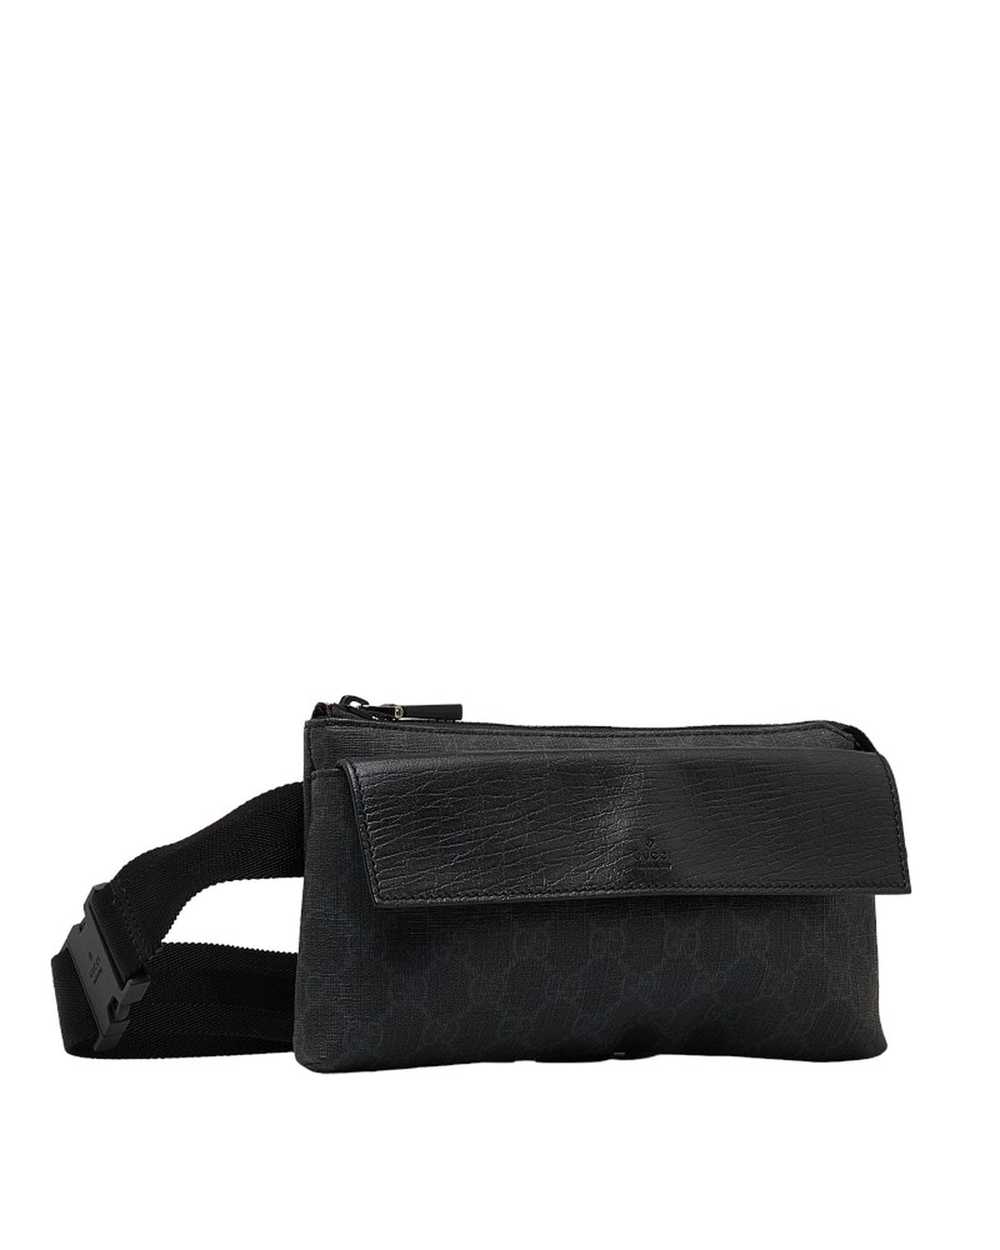 Gucci Black GG Supreme Belt Bag in Excellent Cond… - image 2